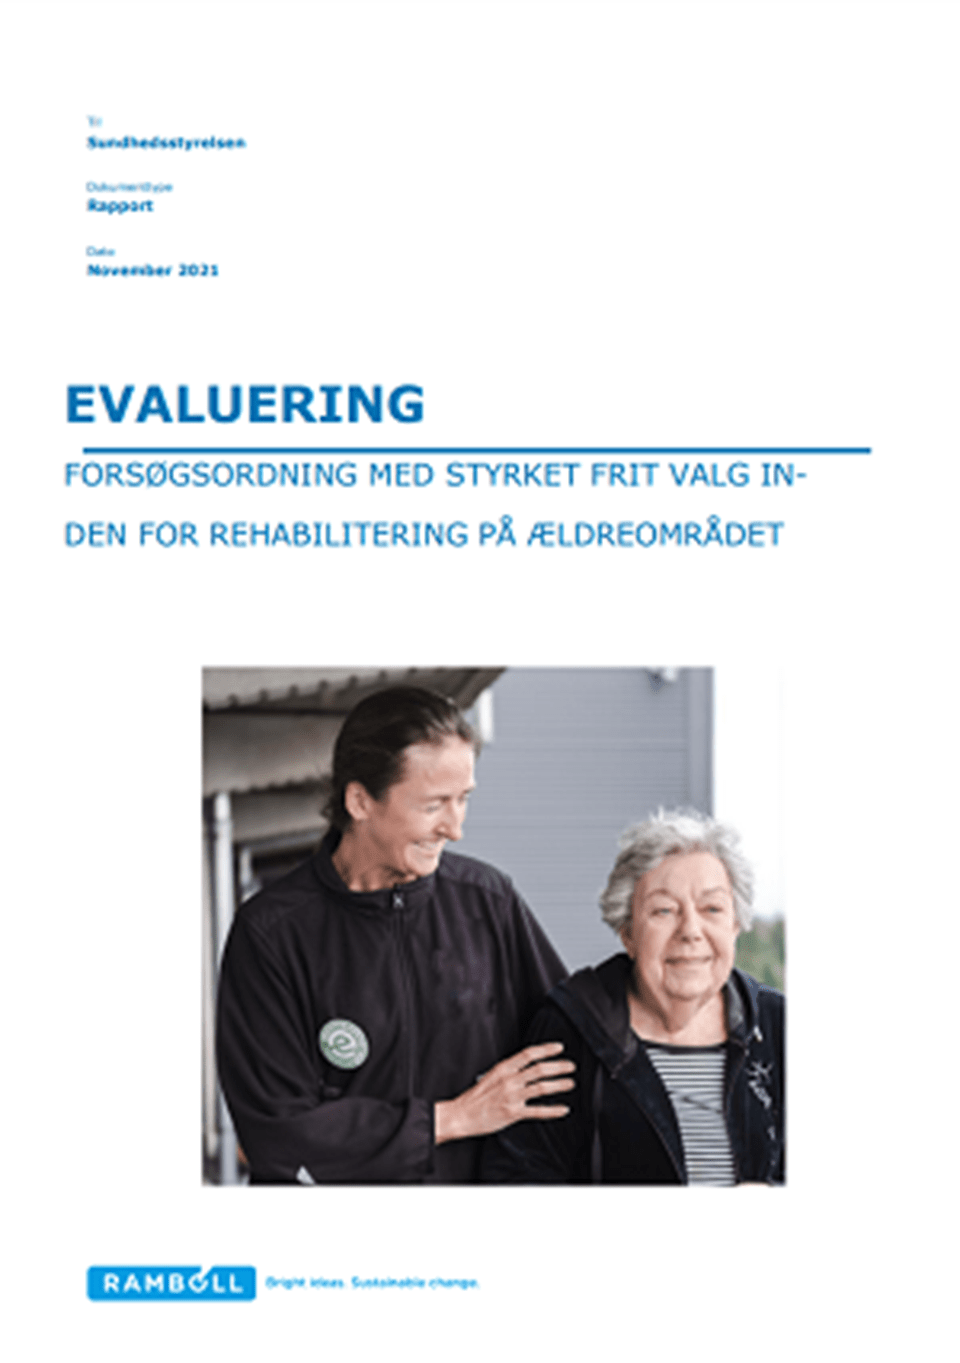 Evaluering af Forsøgsordning med styrket frit valg inden for rehabilitering på ældreområdet